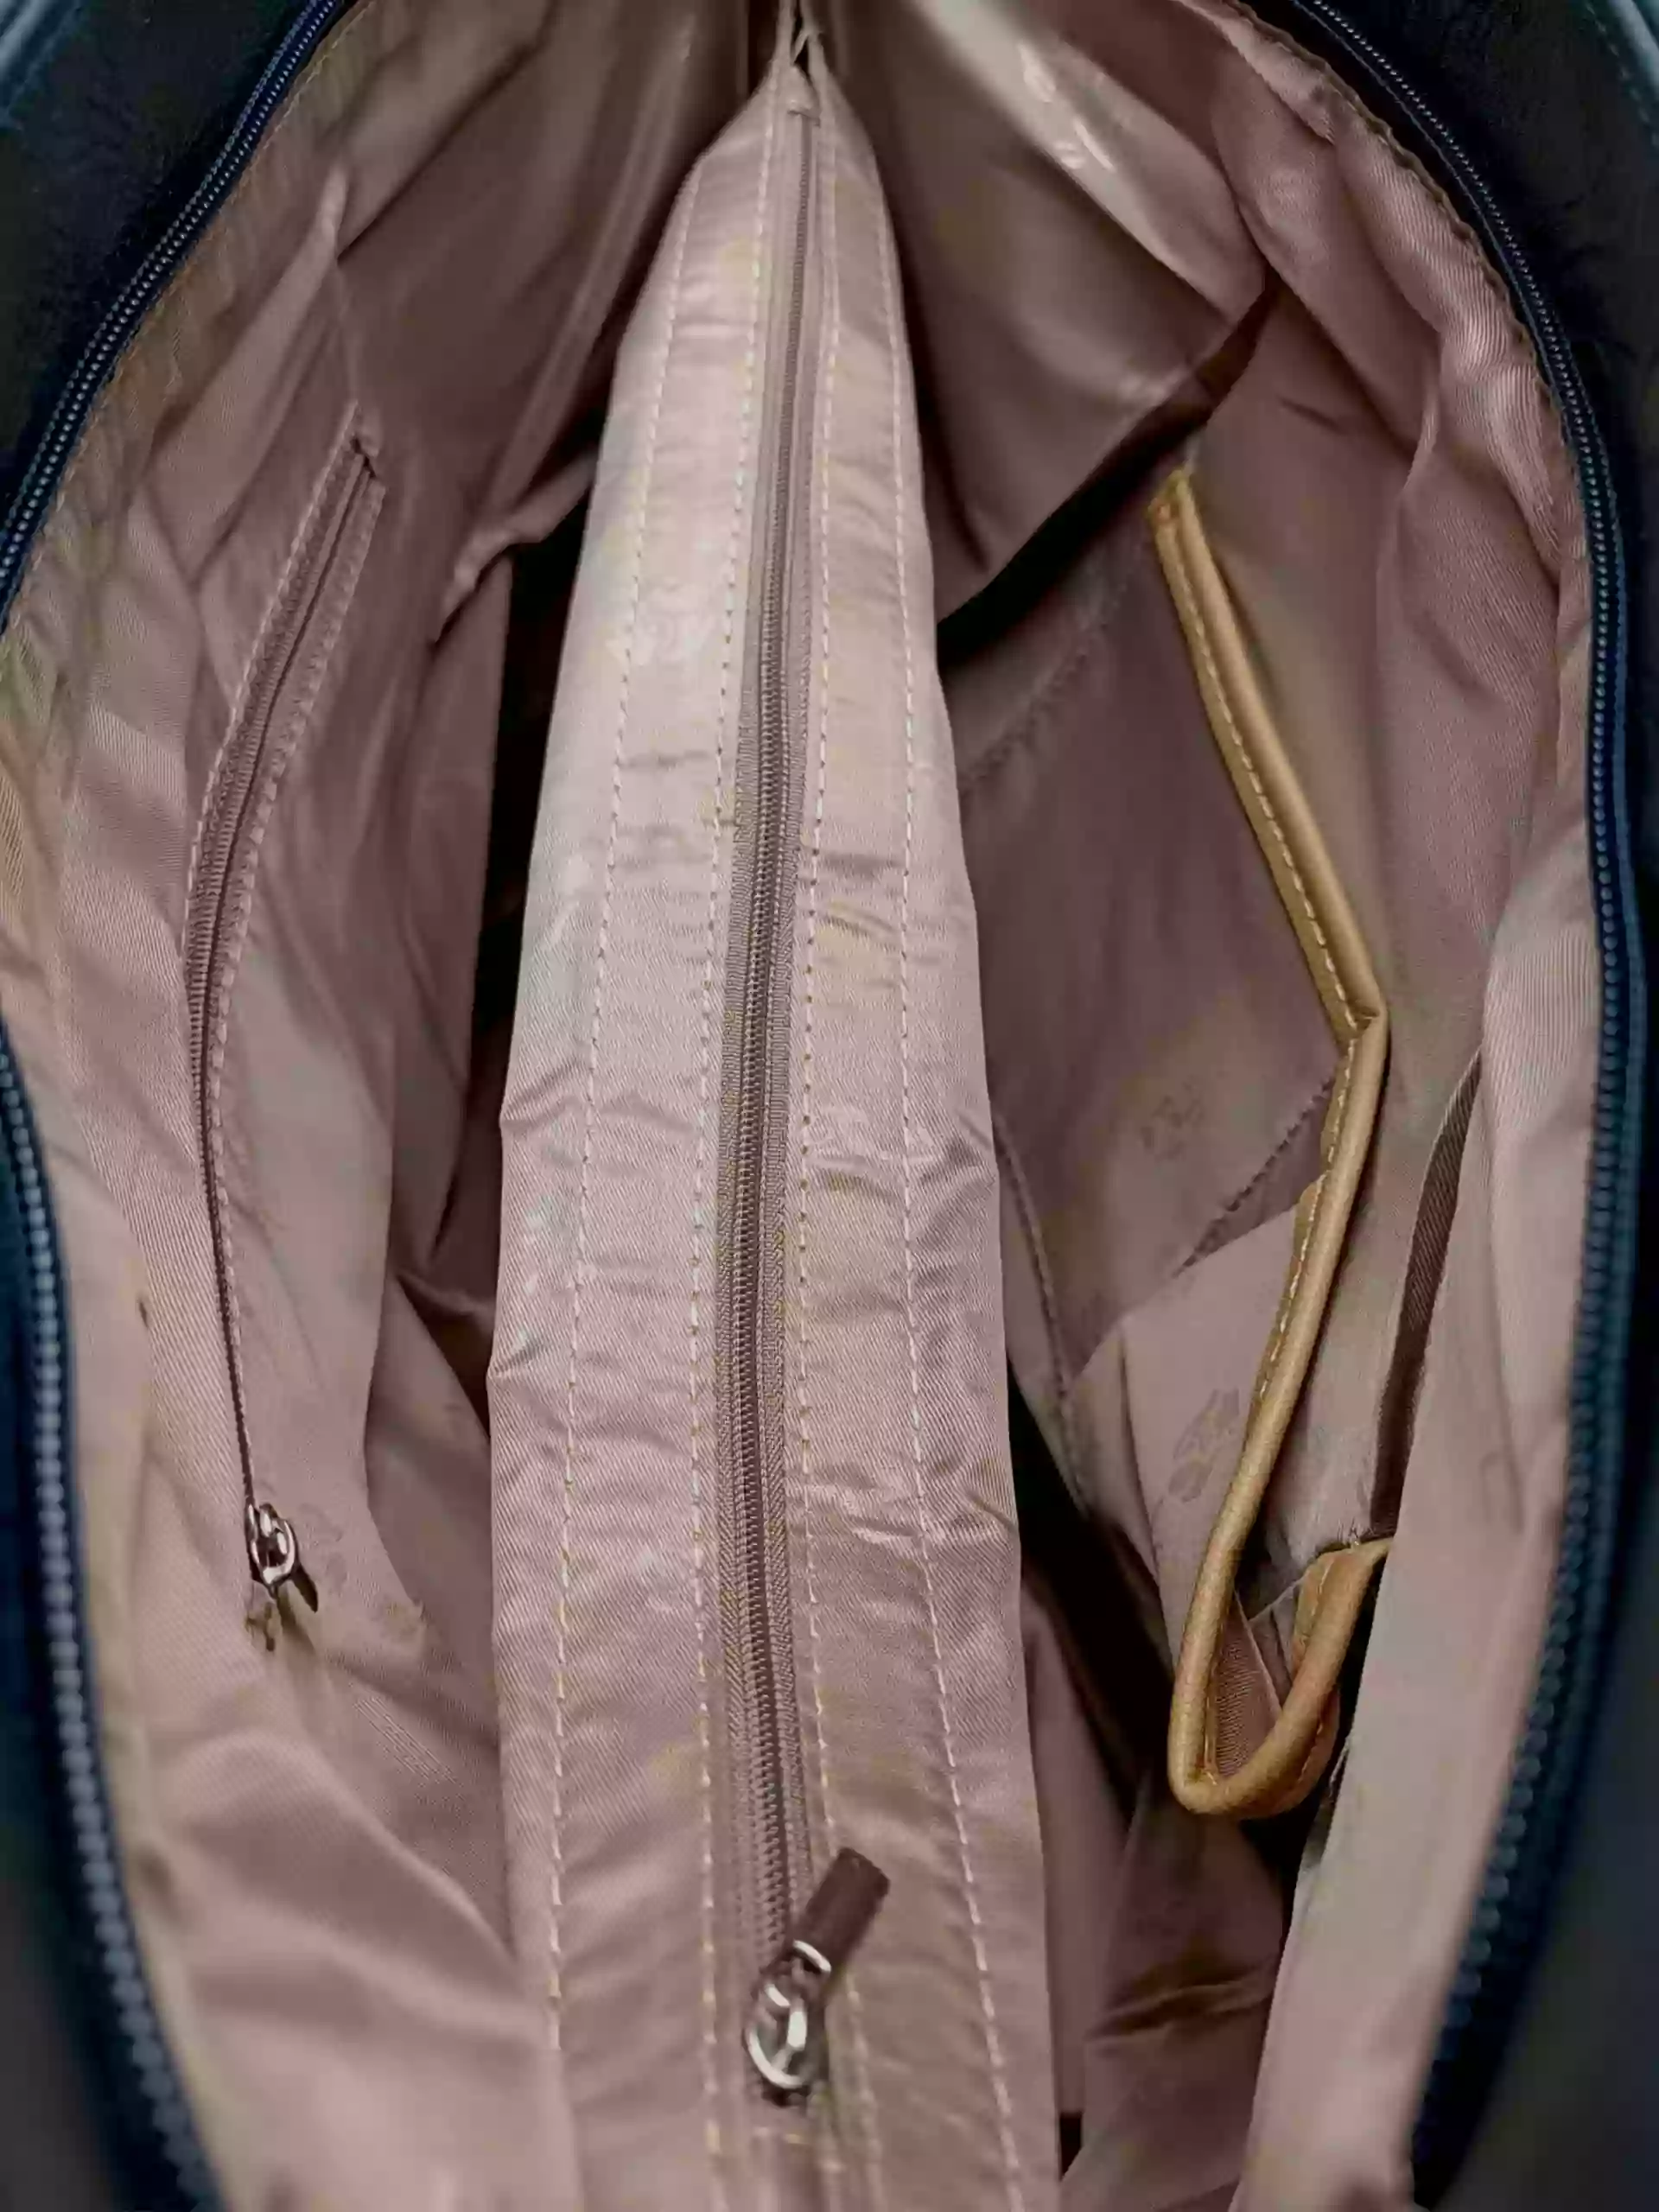 Tmavě modrá kabelka přes rameno s kapsou, Tapple, H22091, vnitřní uspořádání kabelky